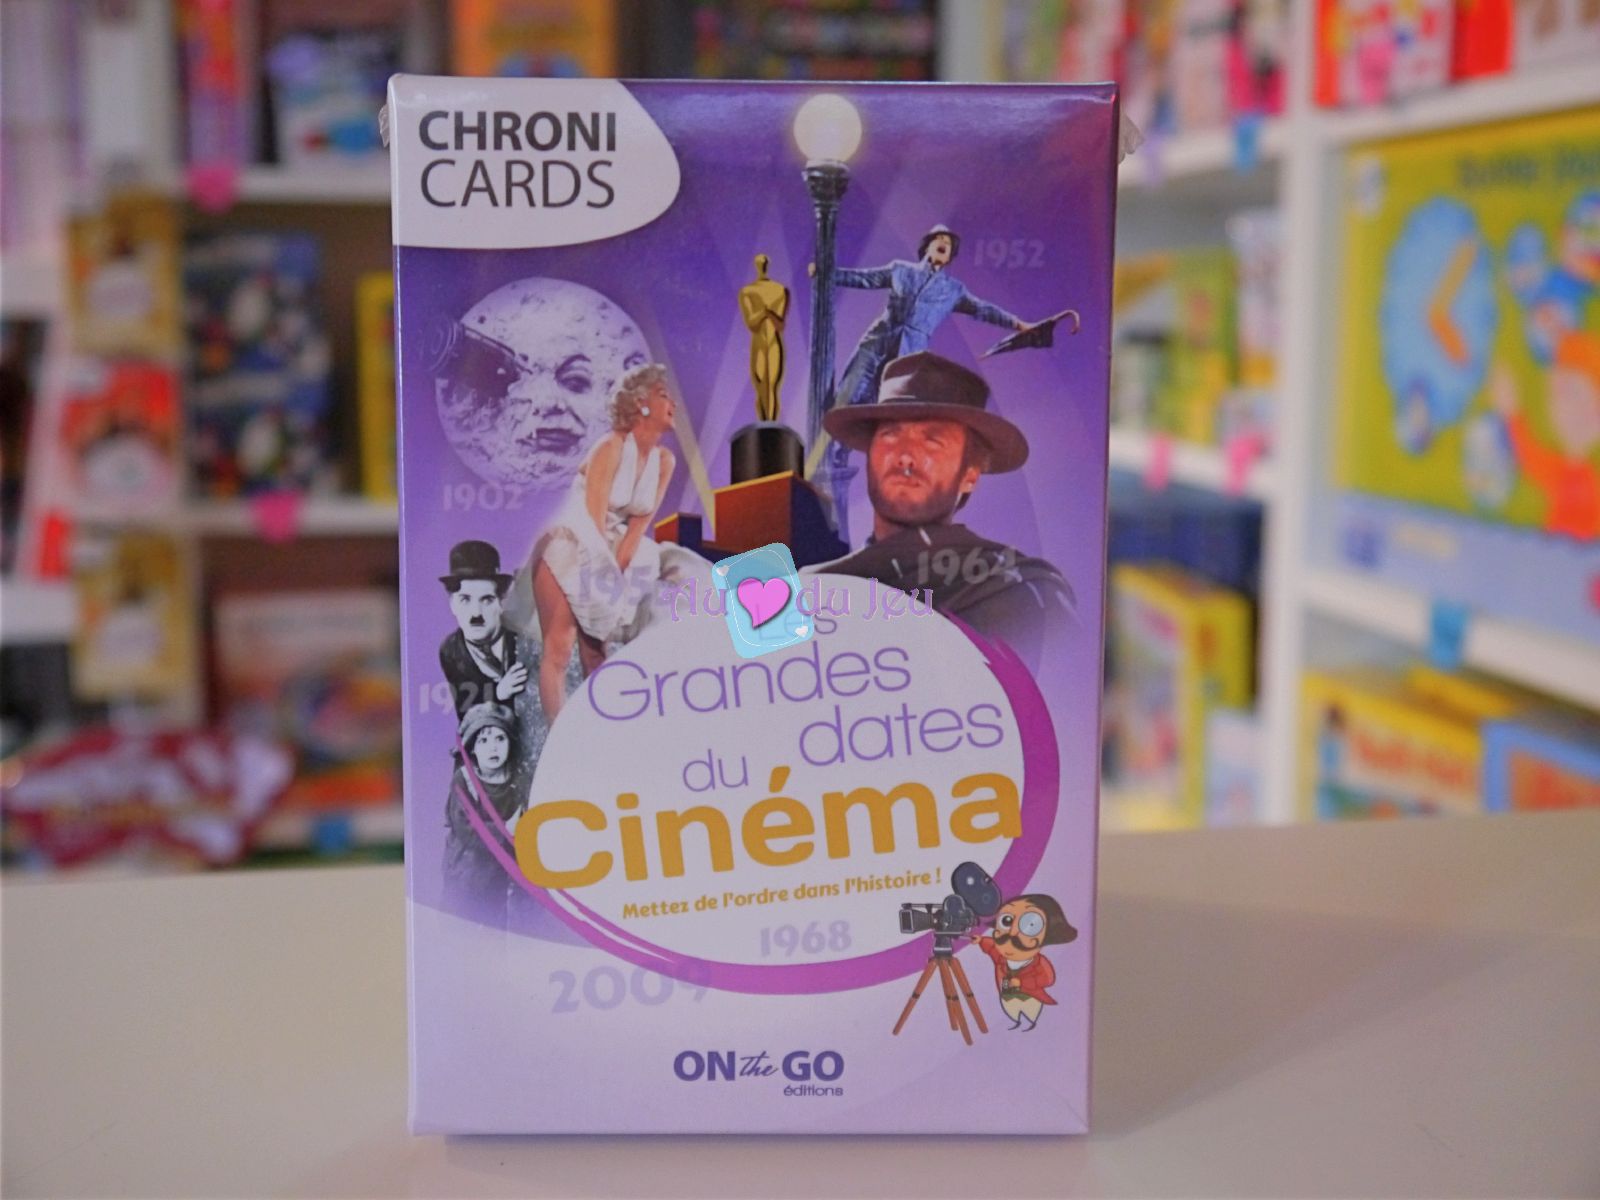 Chronicards - Les Grandes Dates du Cinema